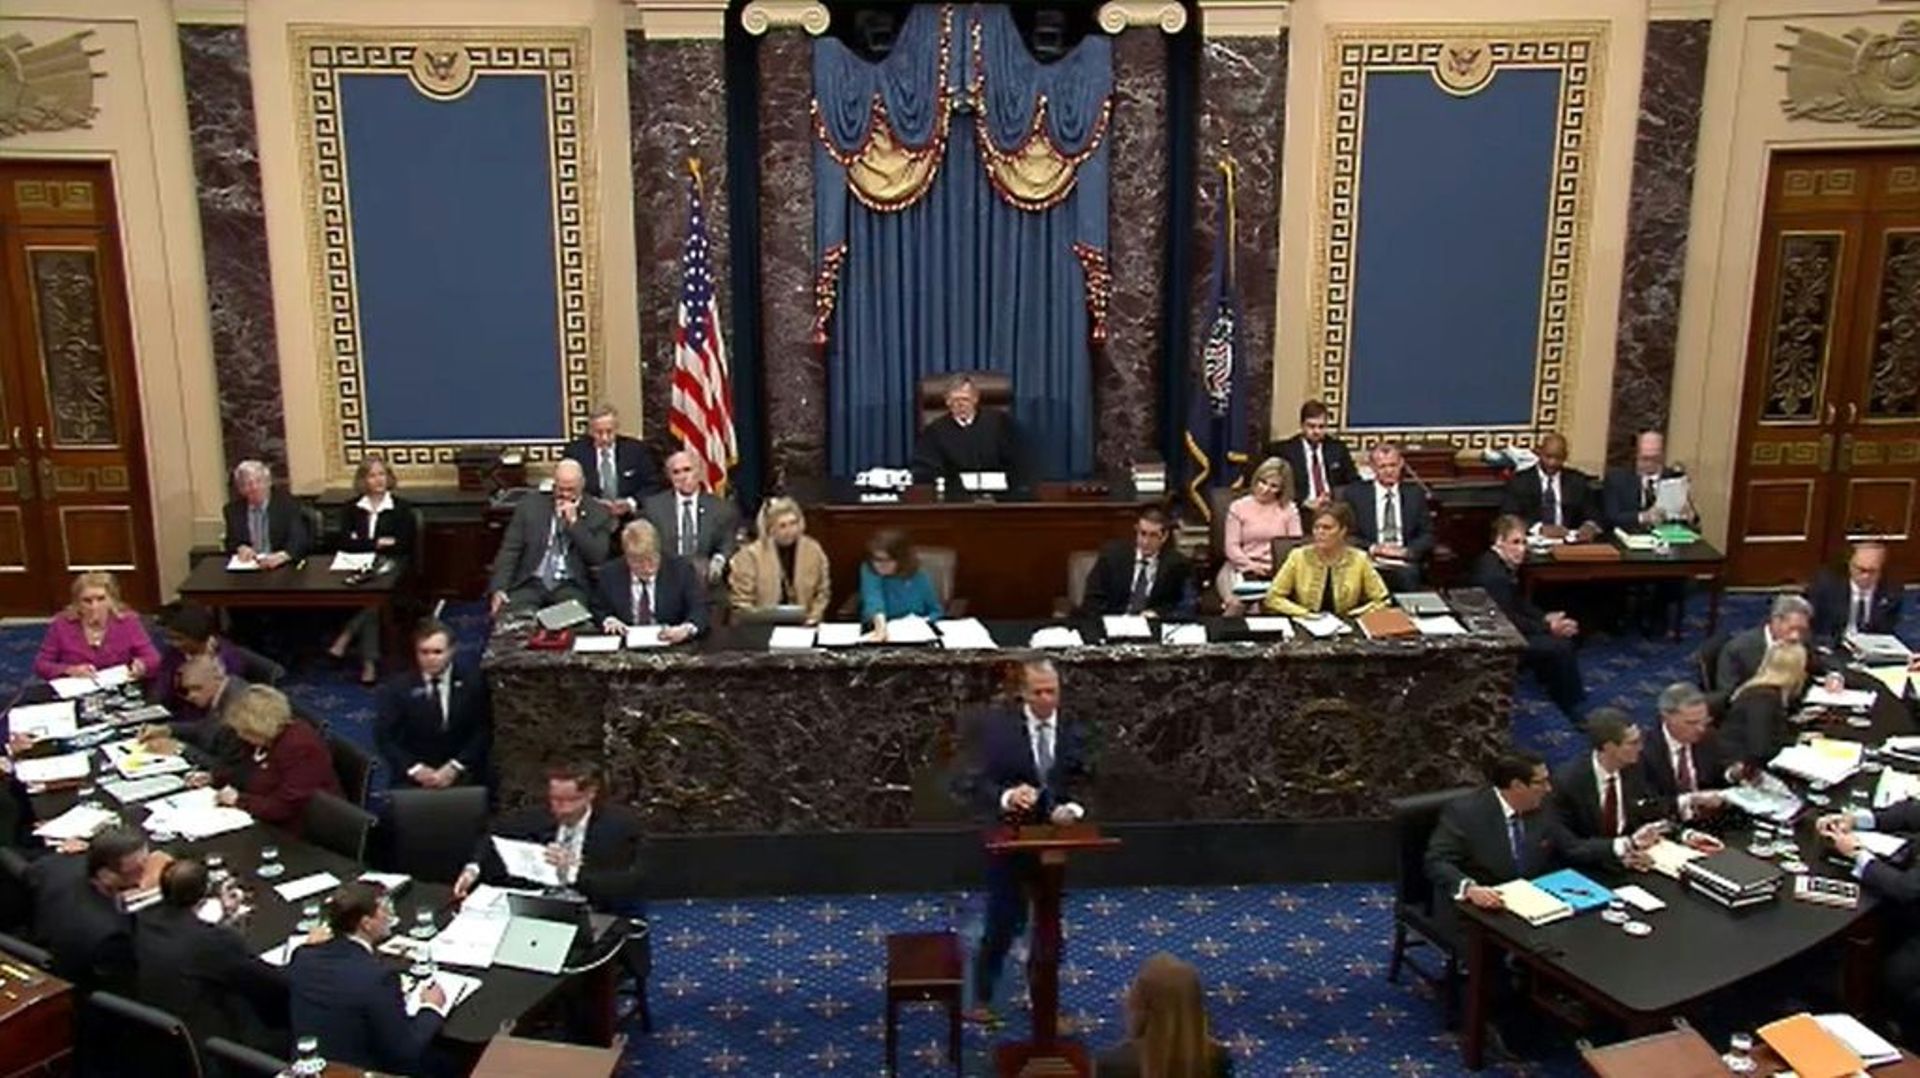 Capture d'écran de l'hémicycle du Sénat, le 24 janvier 2020 à Washington